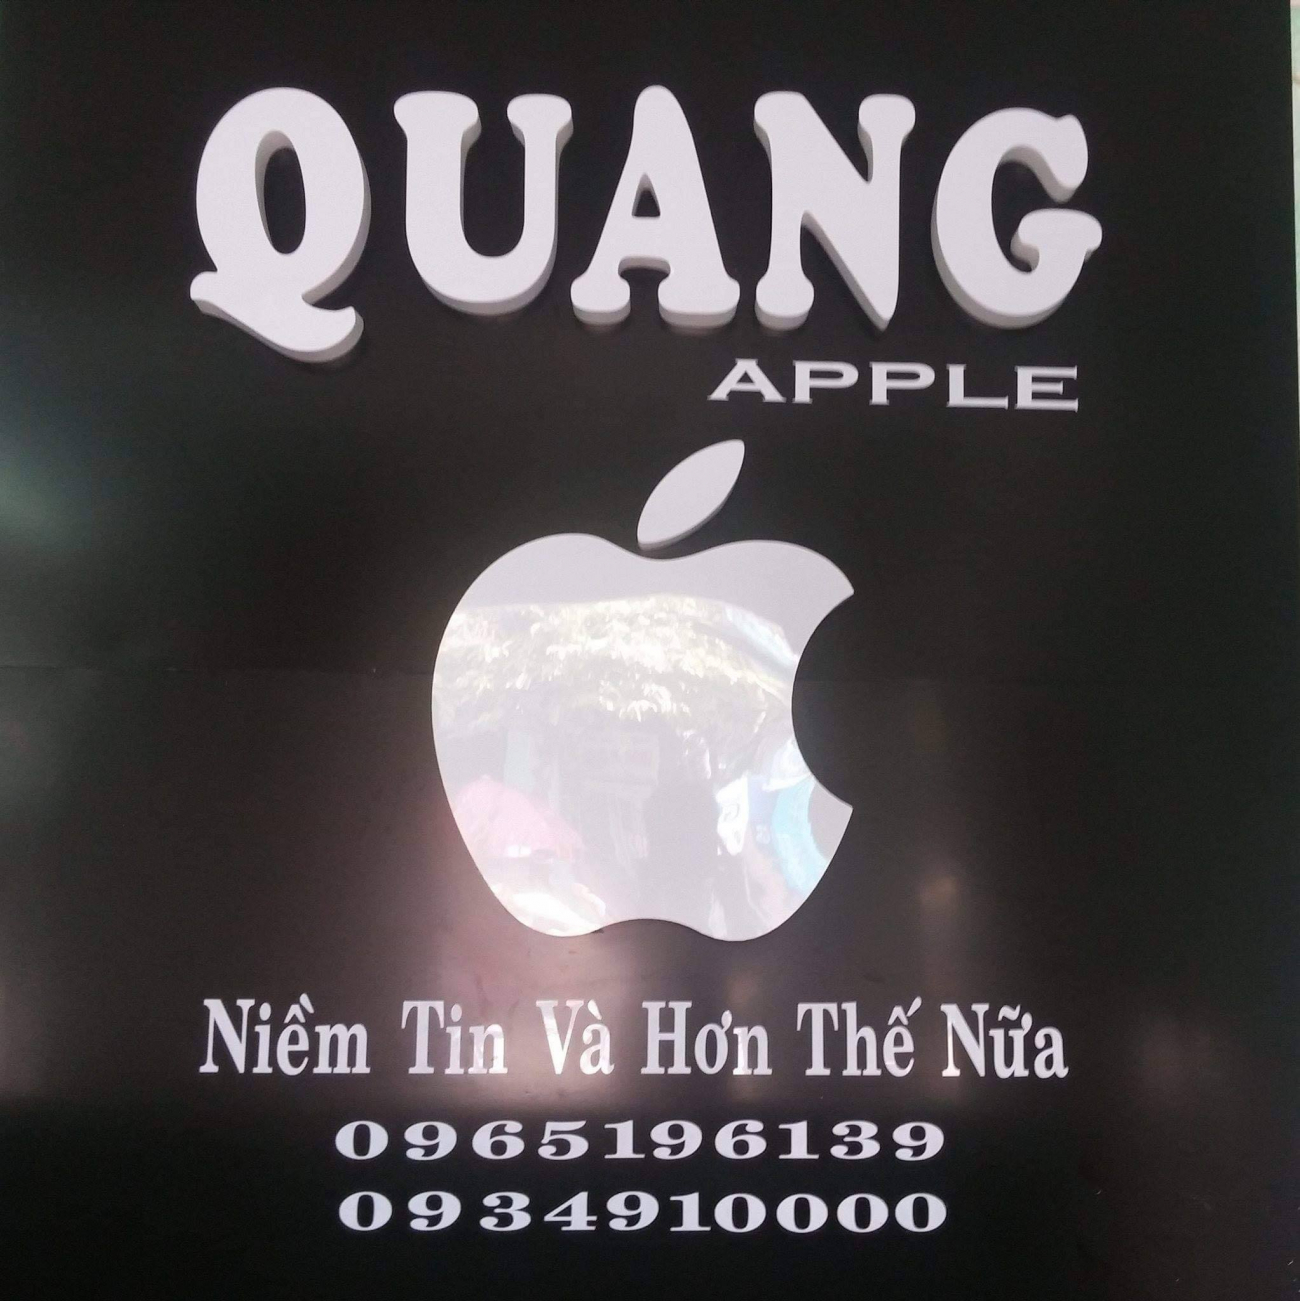 Cửa hàng điện thoại Quang Apple